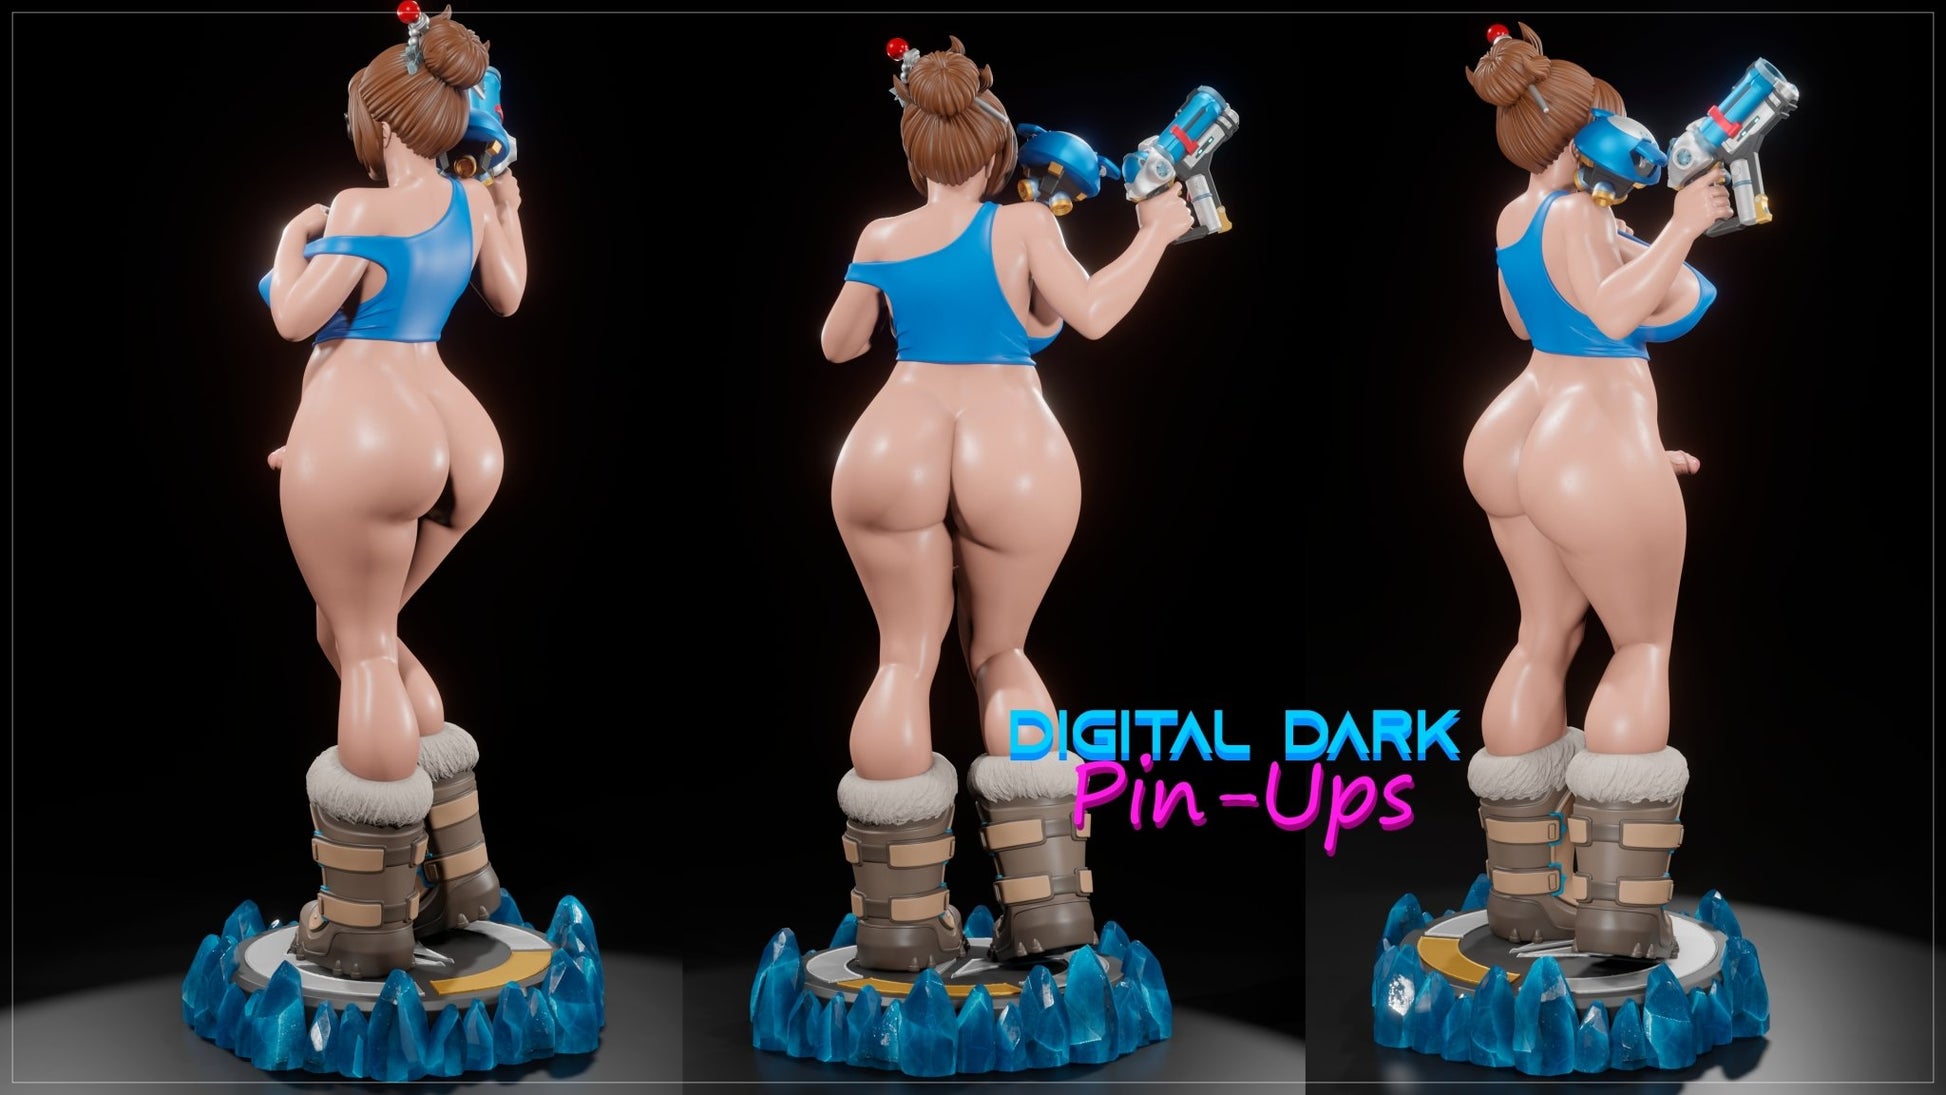 Adult Resin model kit FUTA MEI FunArt by Digital Dark Pin-Ups Statues & Figurines